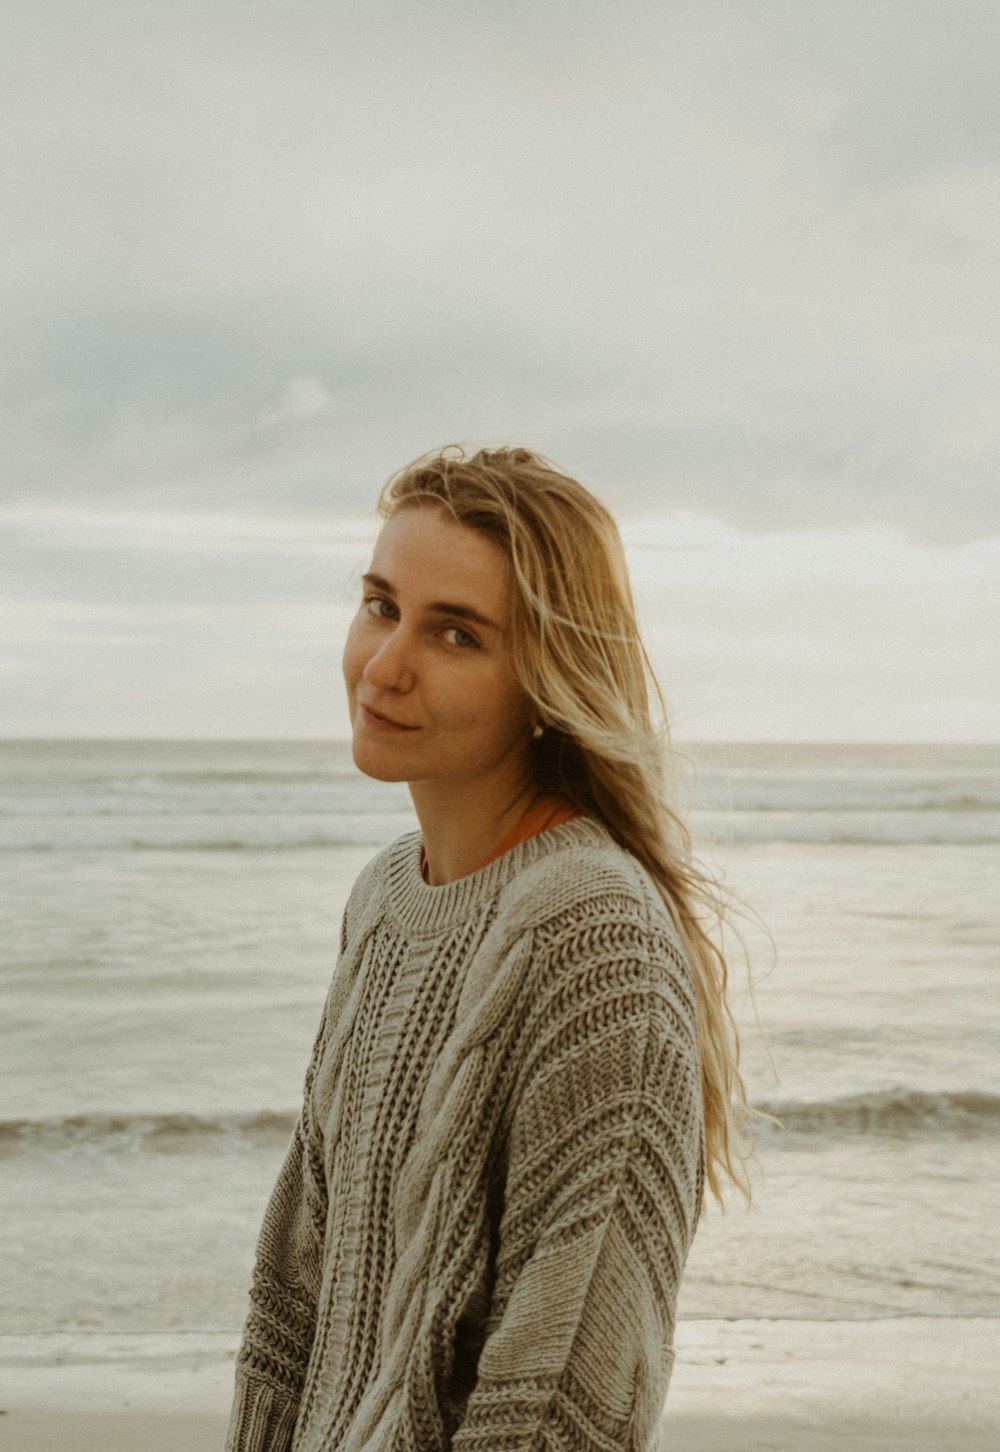 회색 니트 스웨터를 입은 여자가 낮 동안 해변에 서 있다